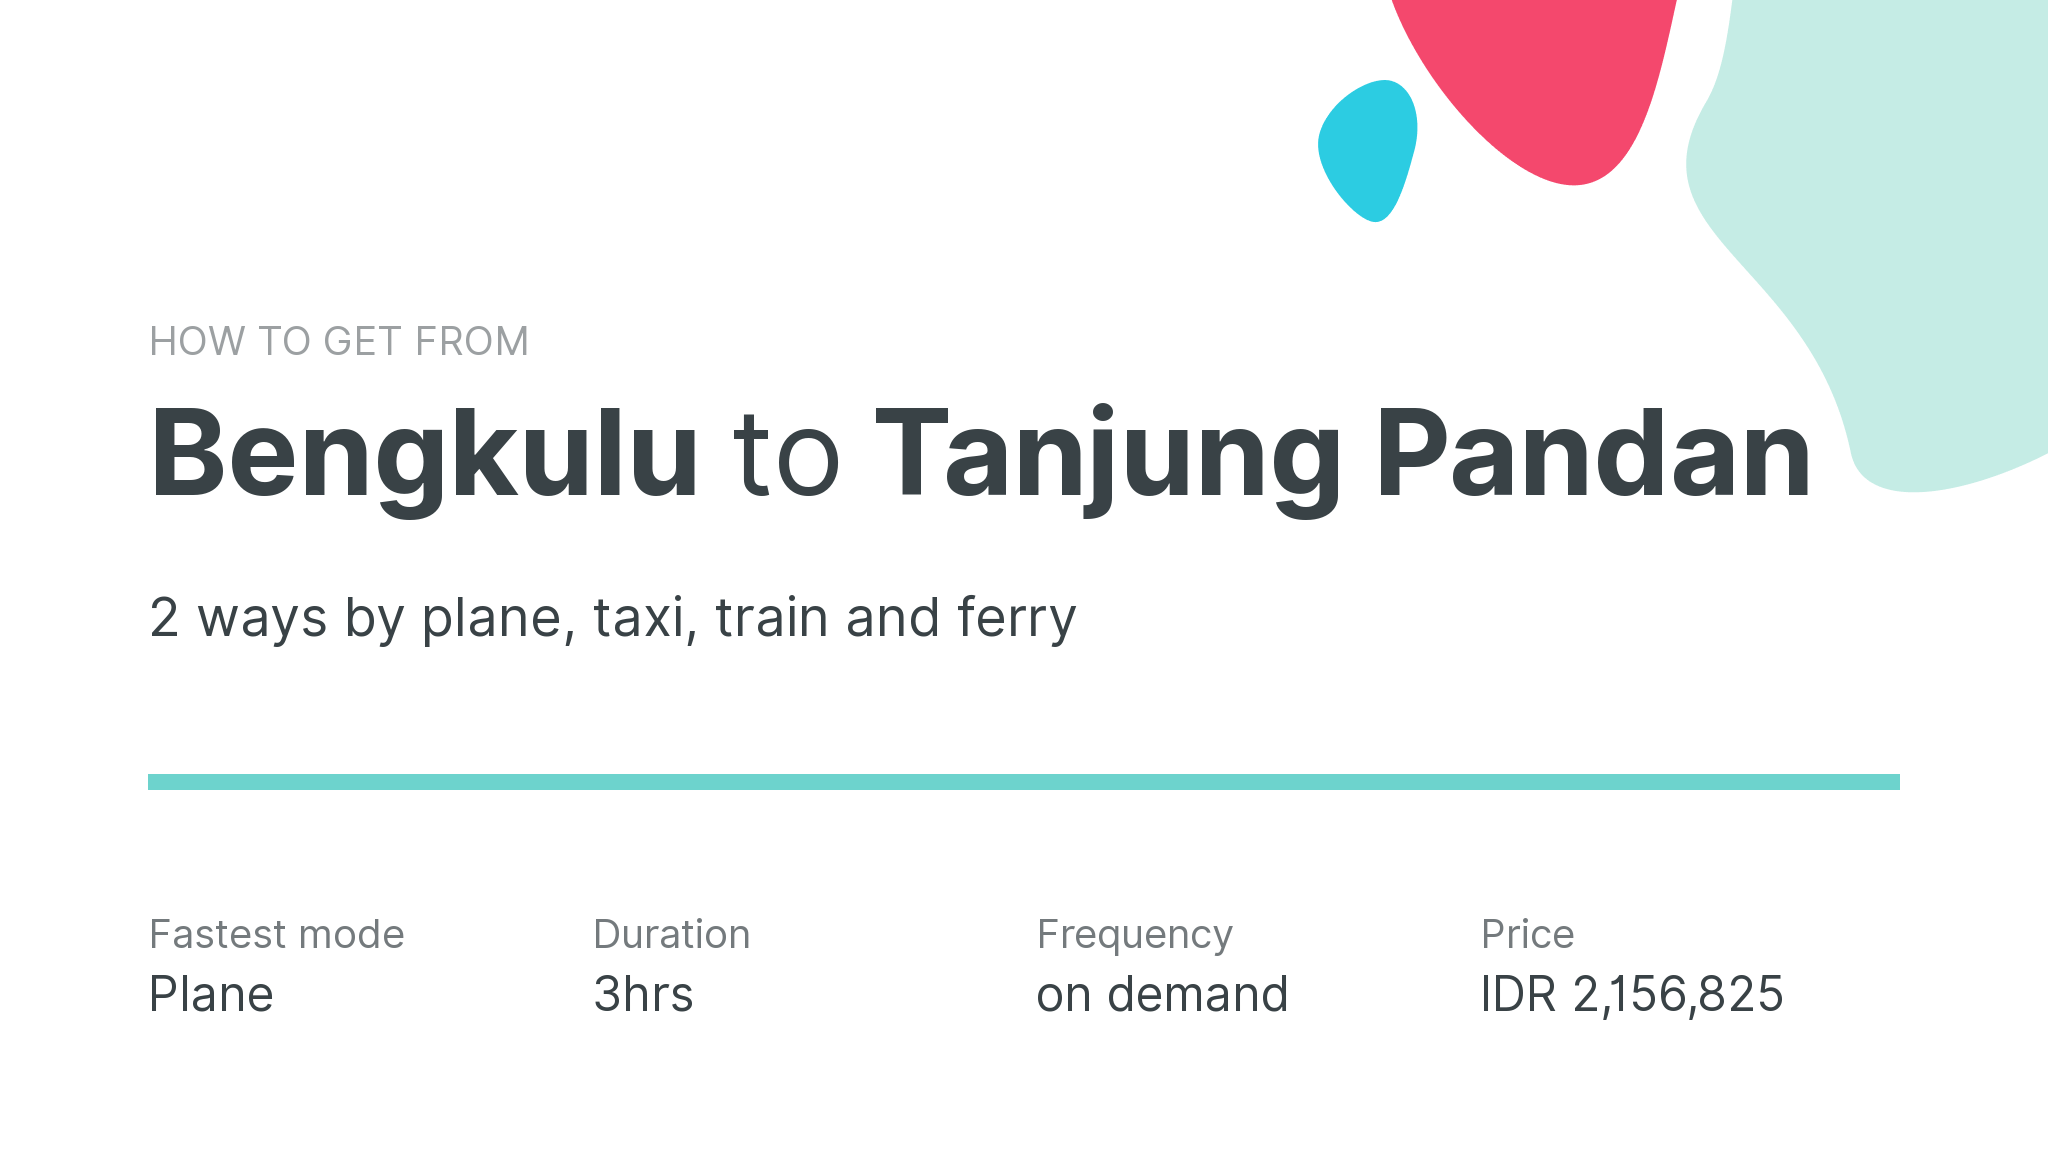 How do I get from Bengkulu to Tanjung Pandan